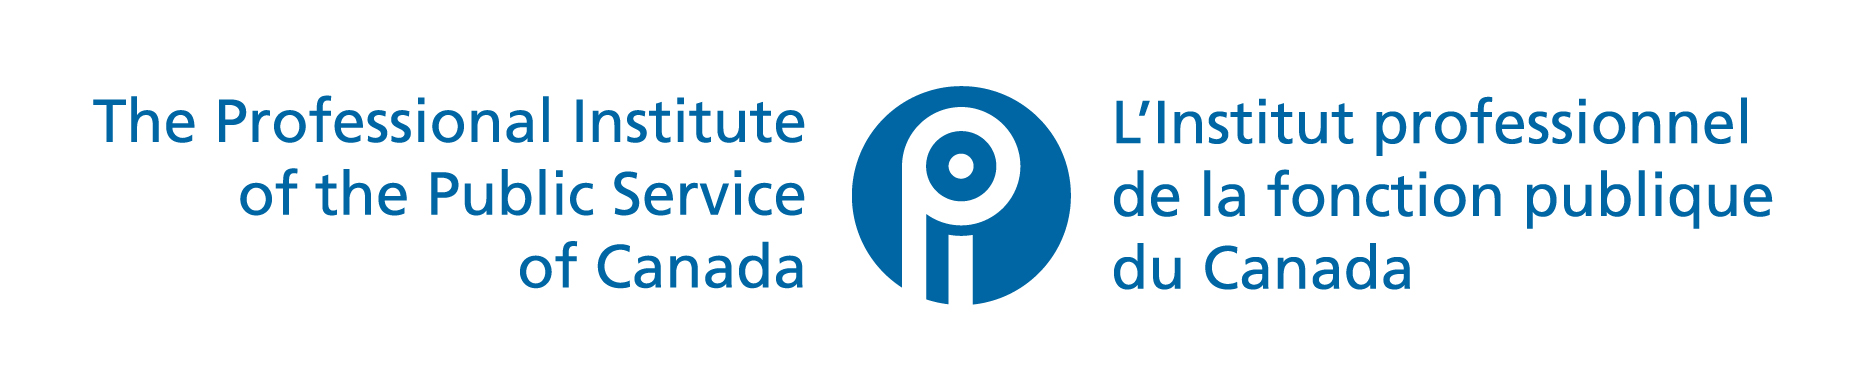 PIPSC Logo